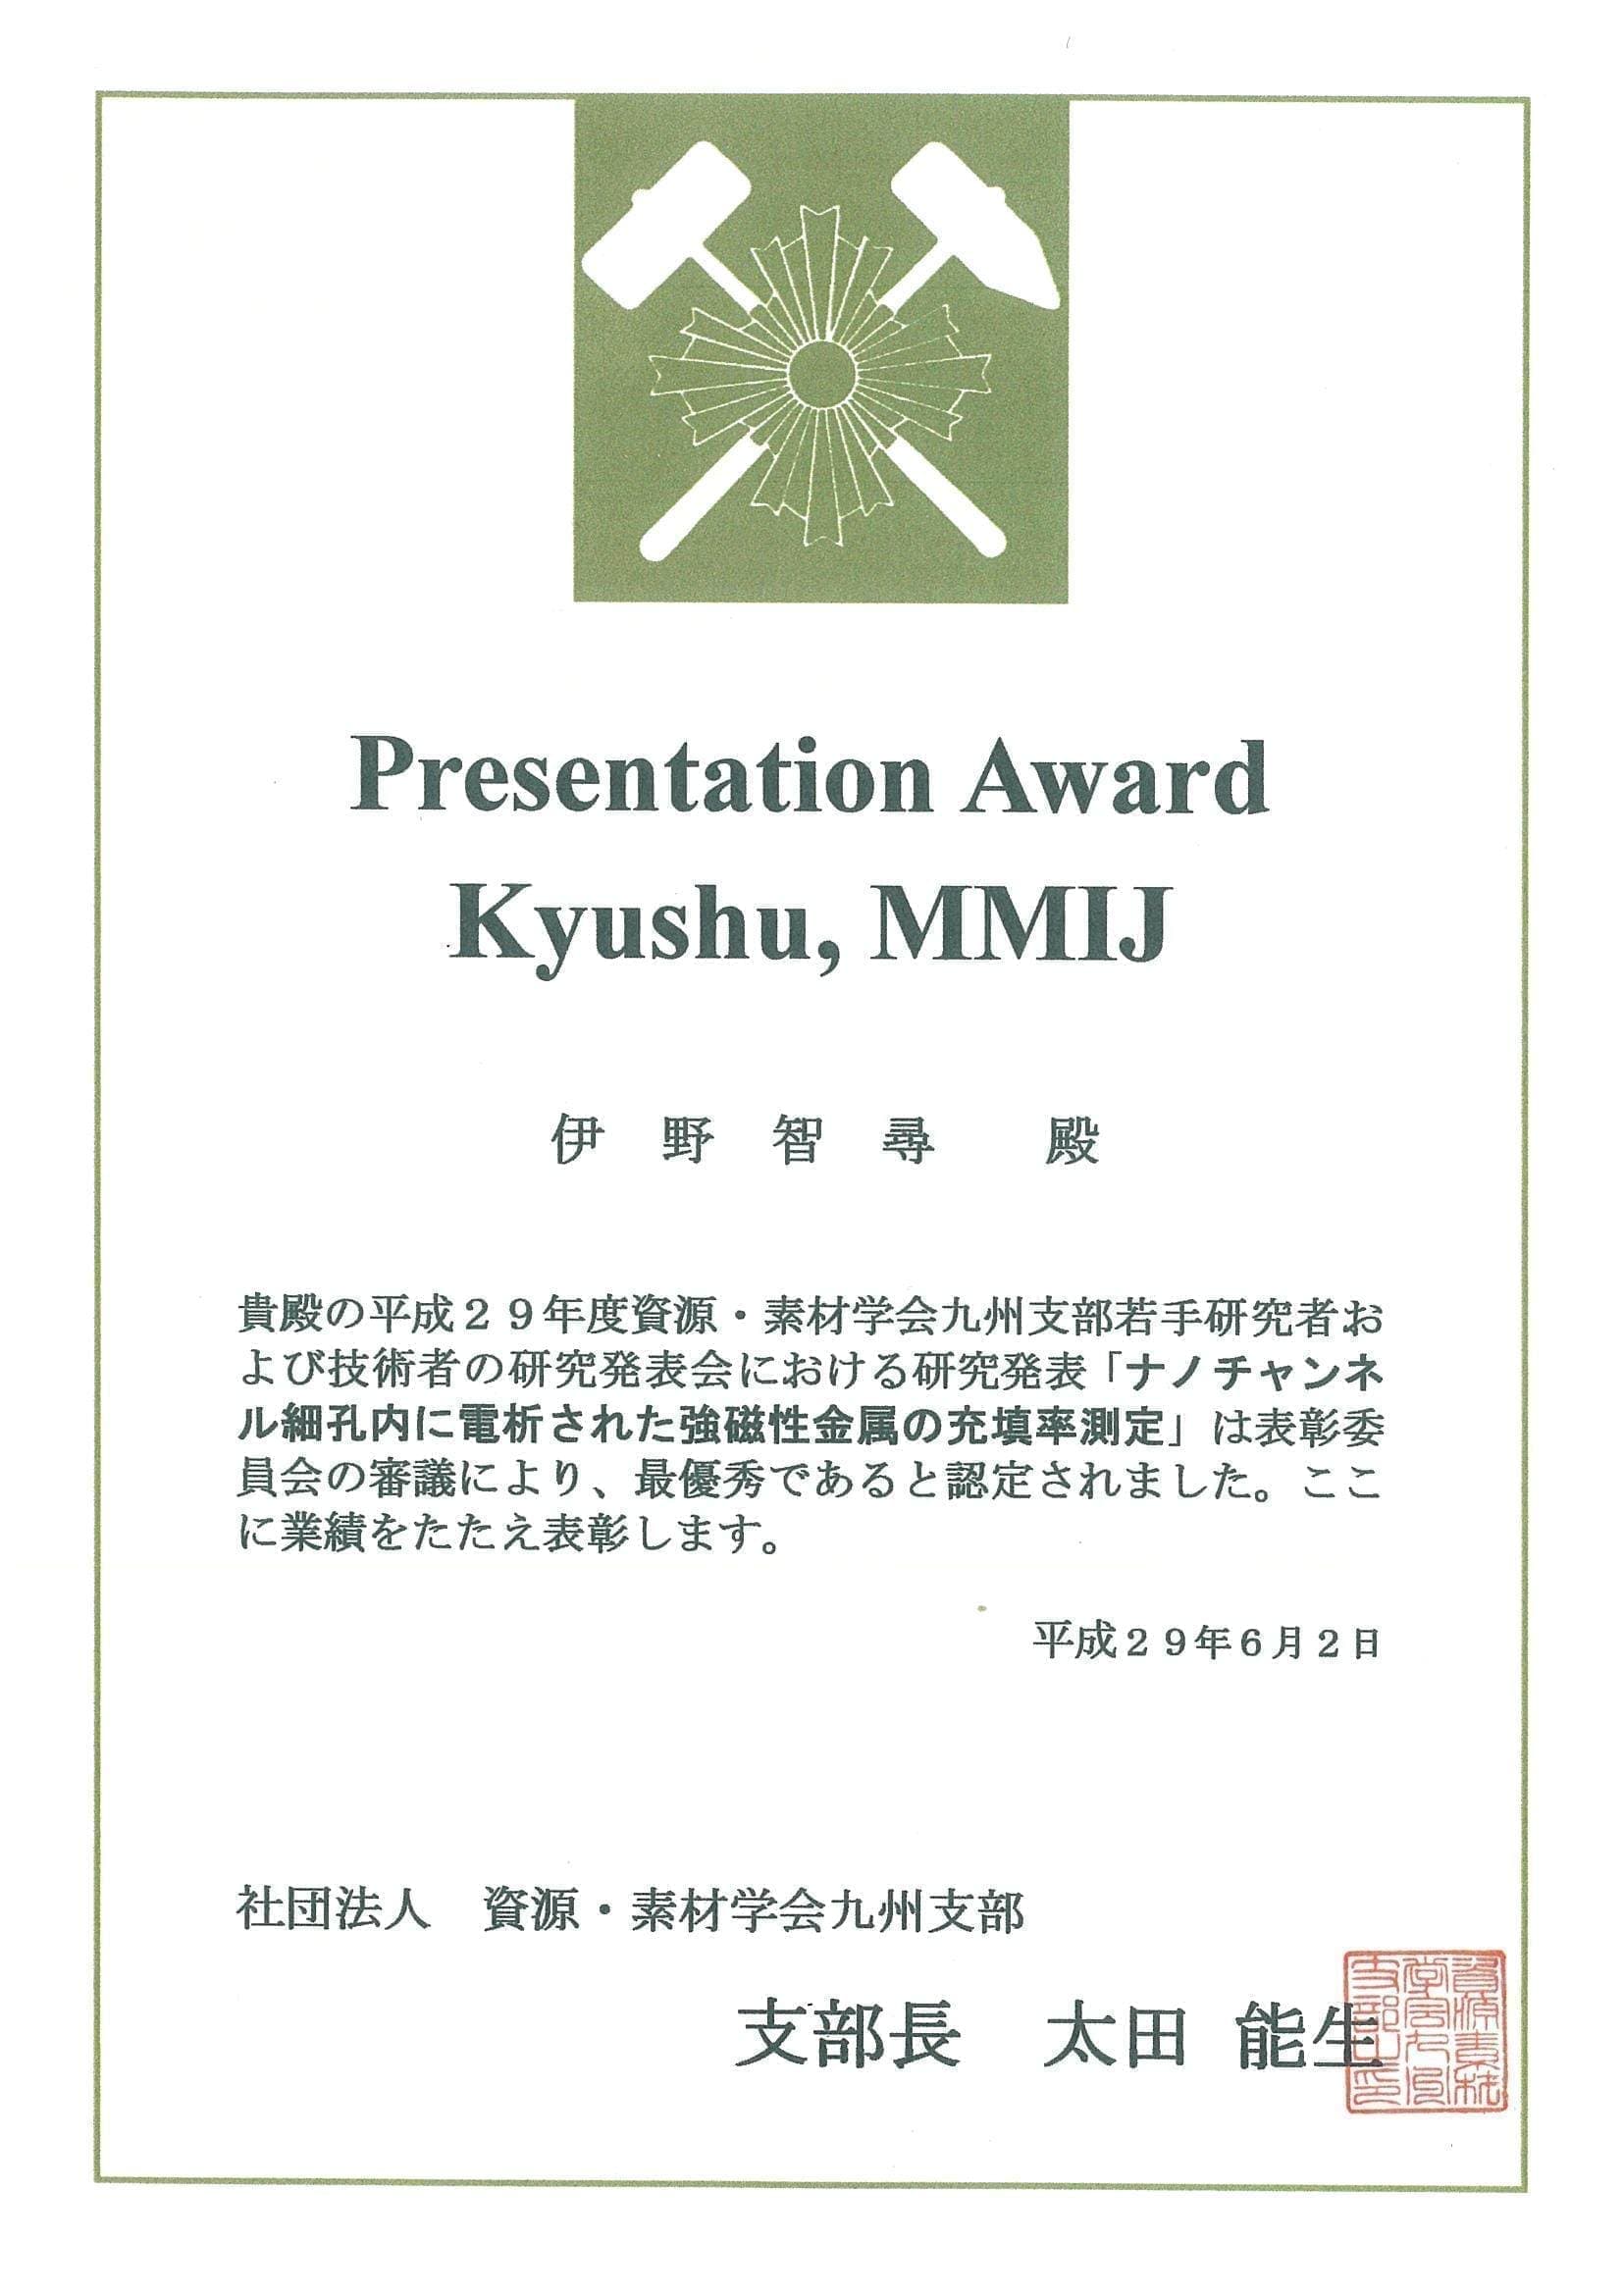 伊野智尋君(M1)が、資源・素材学会九州支部若手研究者および技術者の研究発表会において、Presentation Award Kyushu, MMIJを受賞しました。2017/06/02